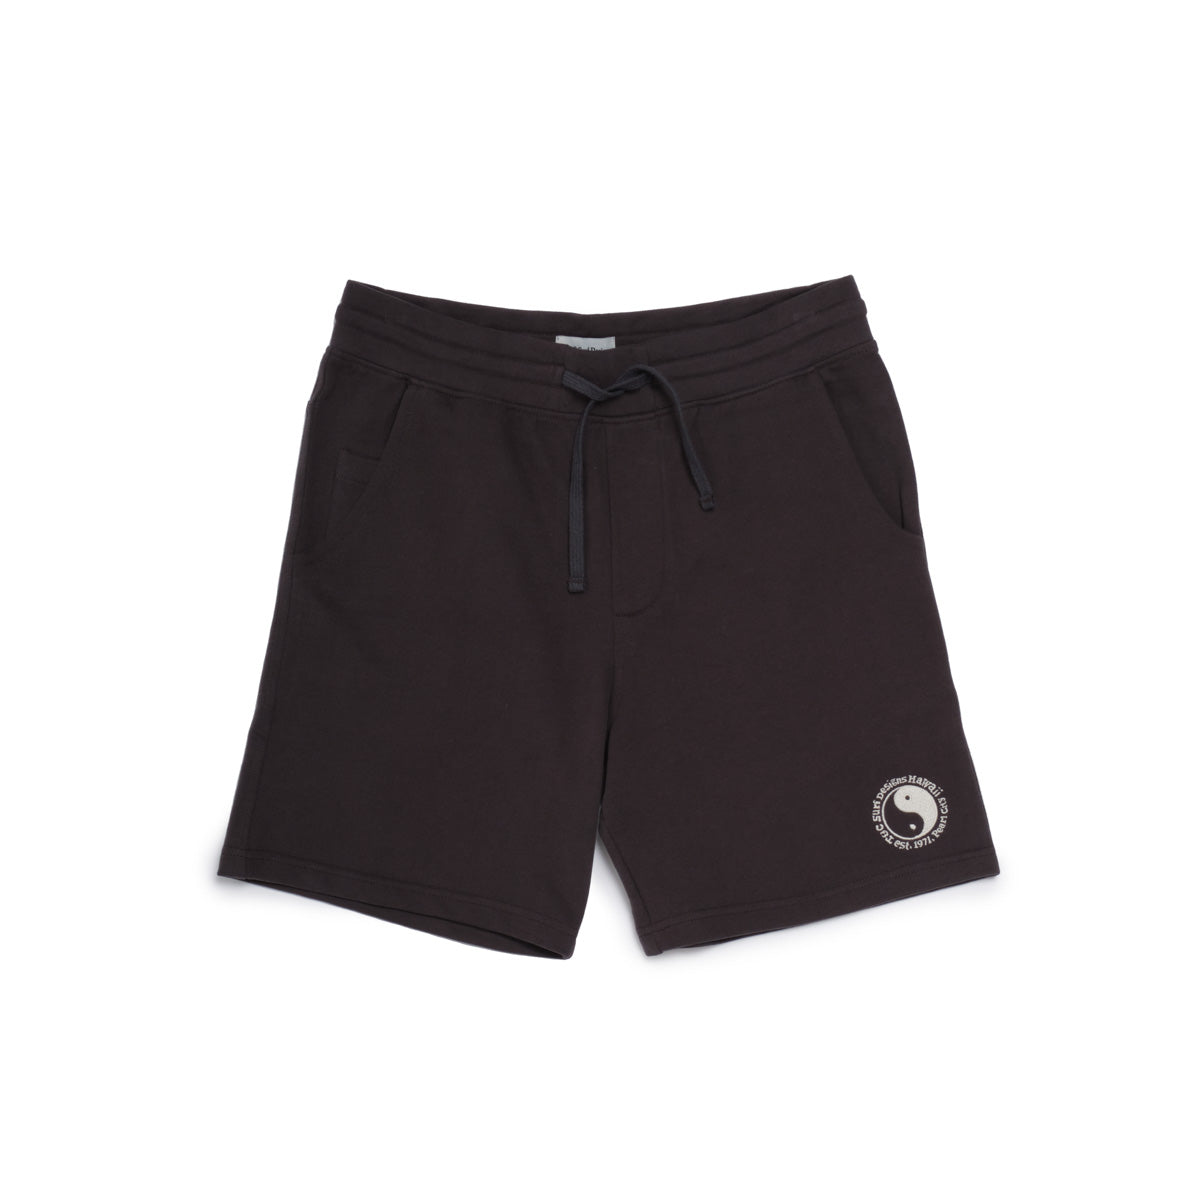 OG Sweat Shorts - Washed Black